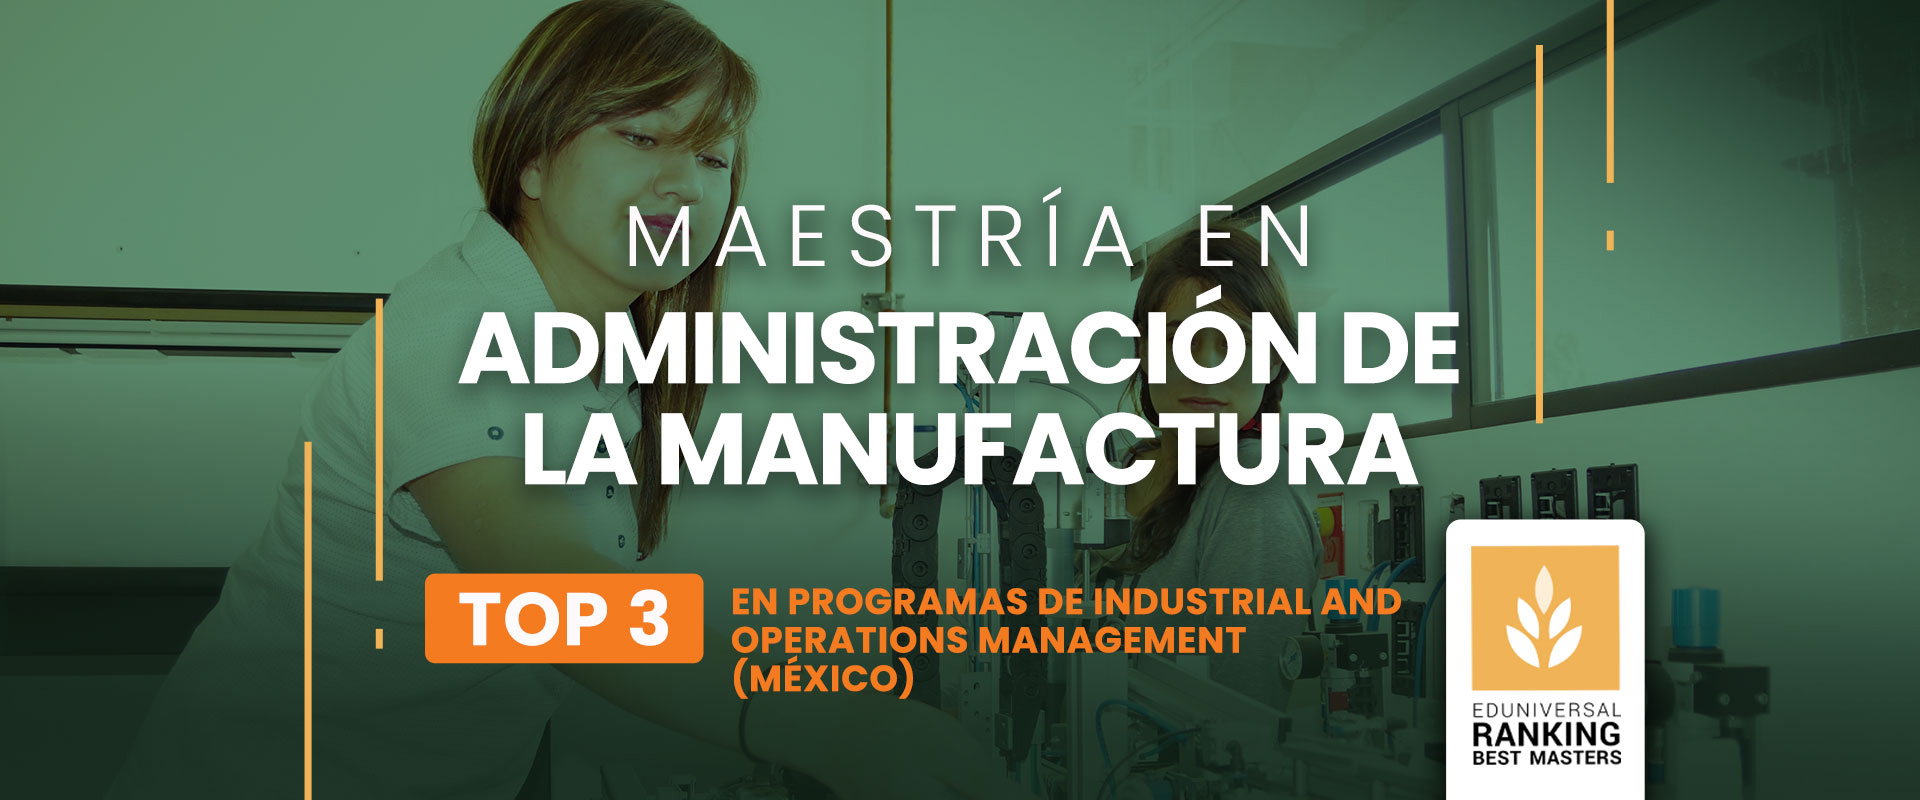 Maestría en Administración de la Manufactura - Universidad de las Américas Puebla (UDLAP)